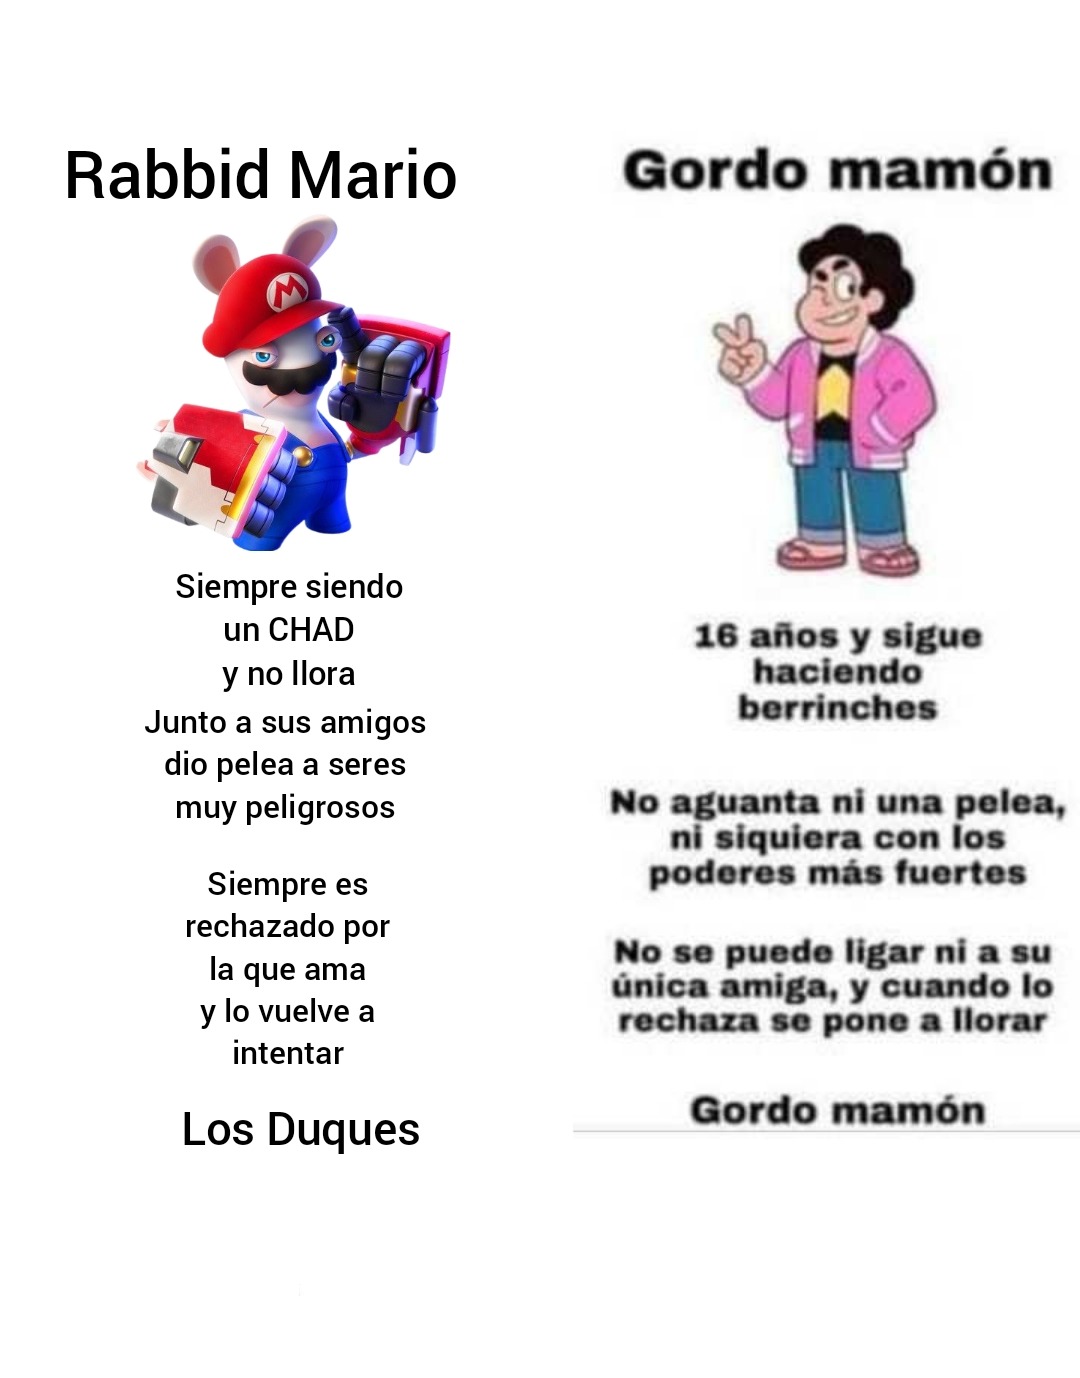 En conclusión, Rabbid Mario es mejor - meme